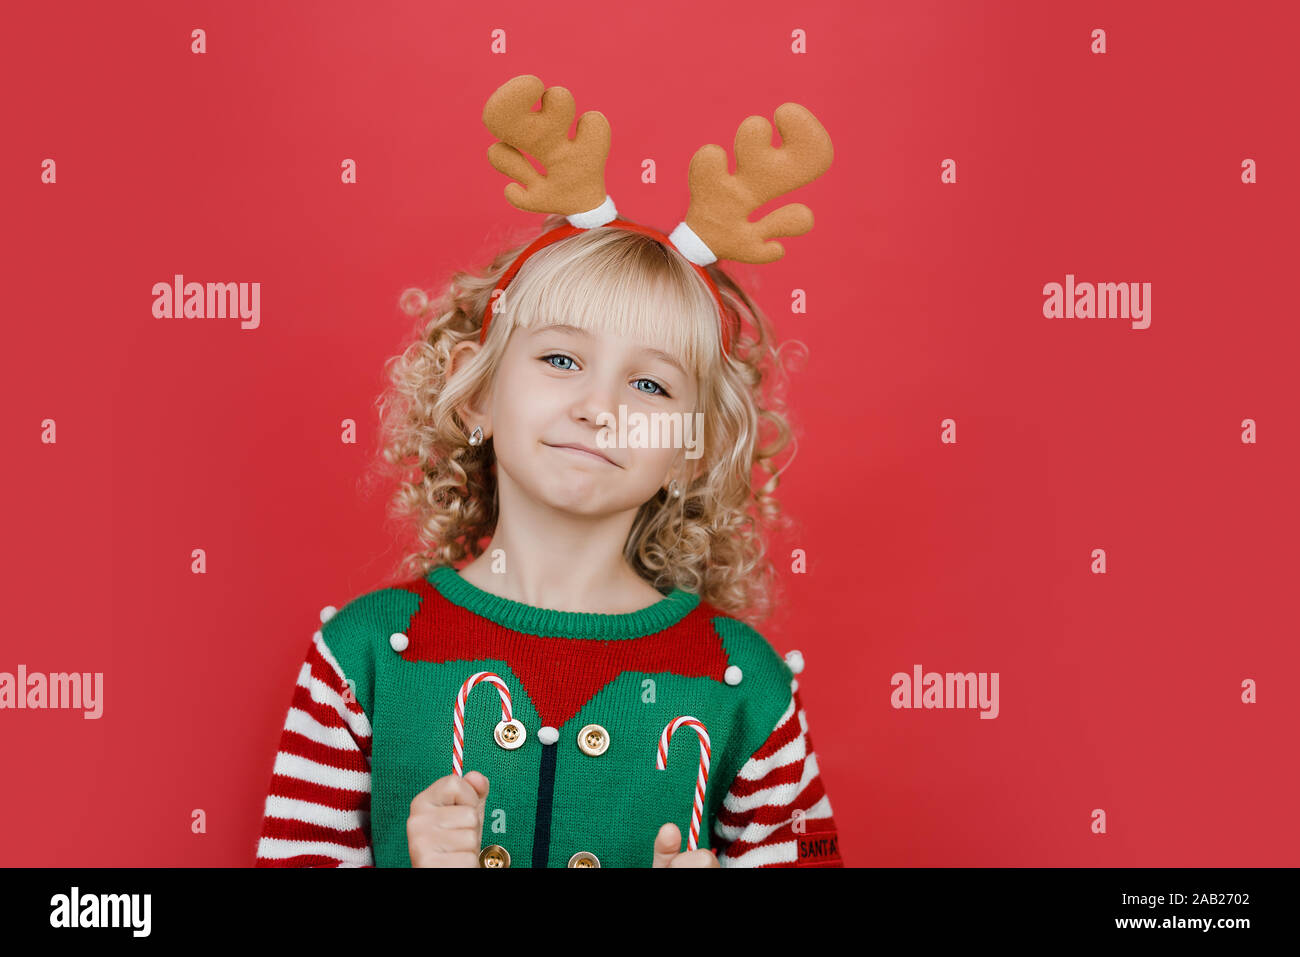 Merry Christmas Little Girl In Santa Elf Helper Costume On